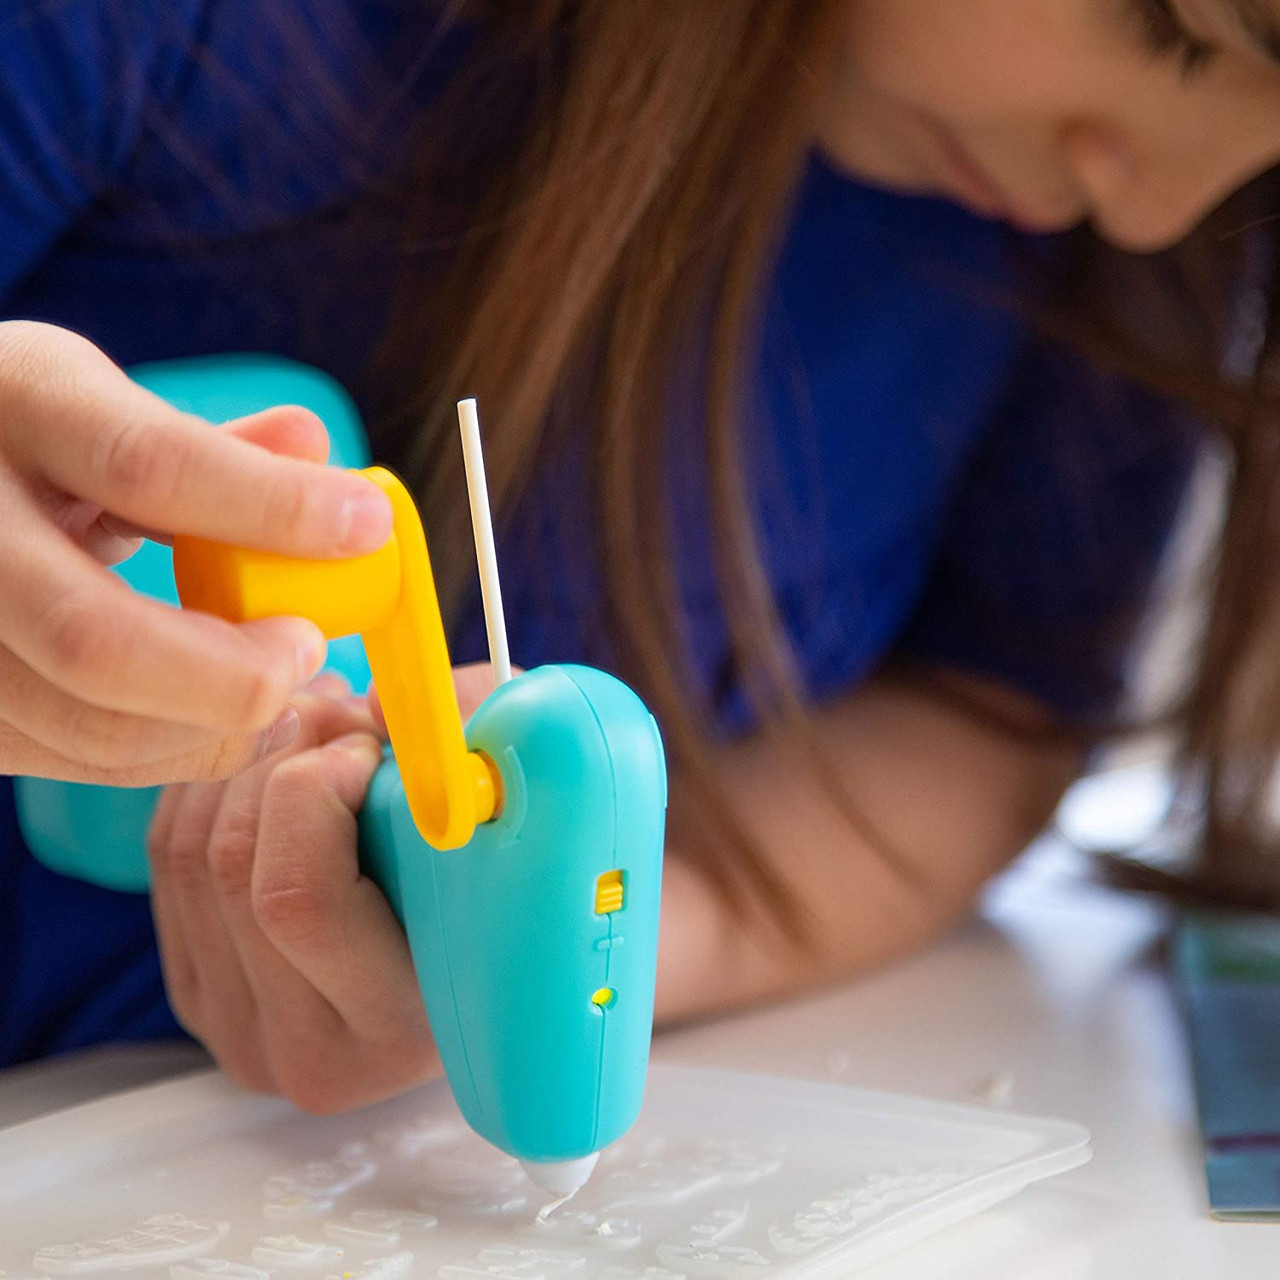 3Doodler 3D Build and Play 3D Printing Pen Bundle 0JPSJUBE1R-B1